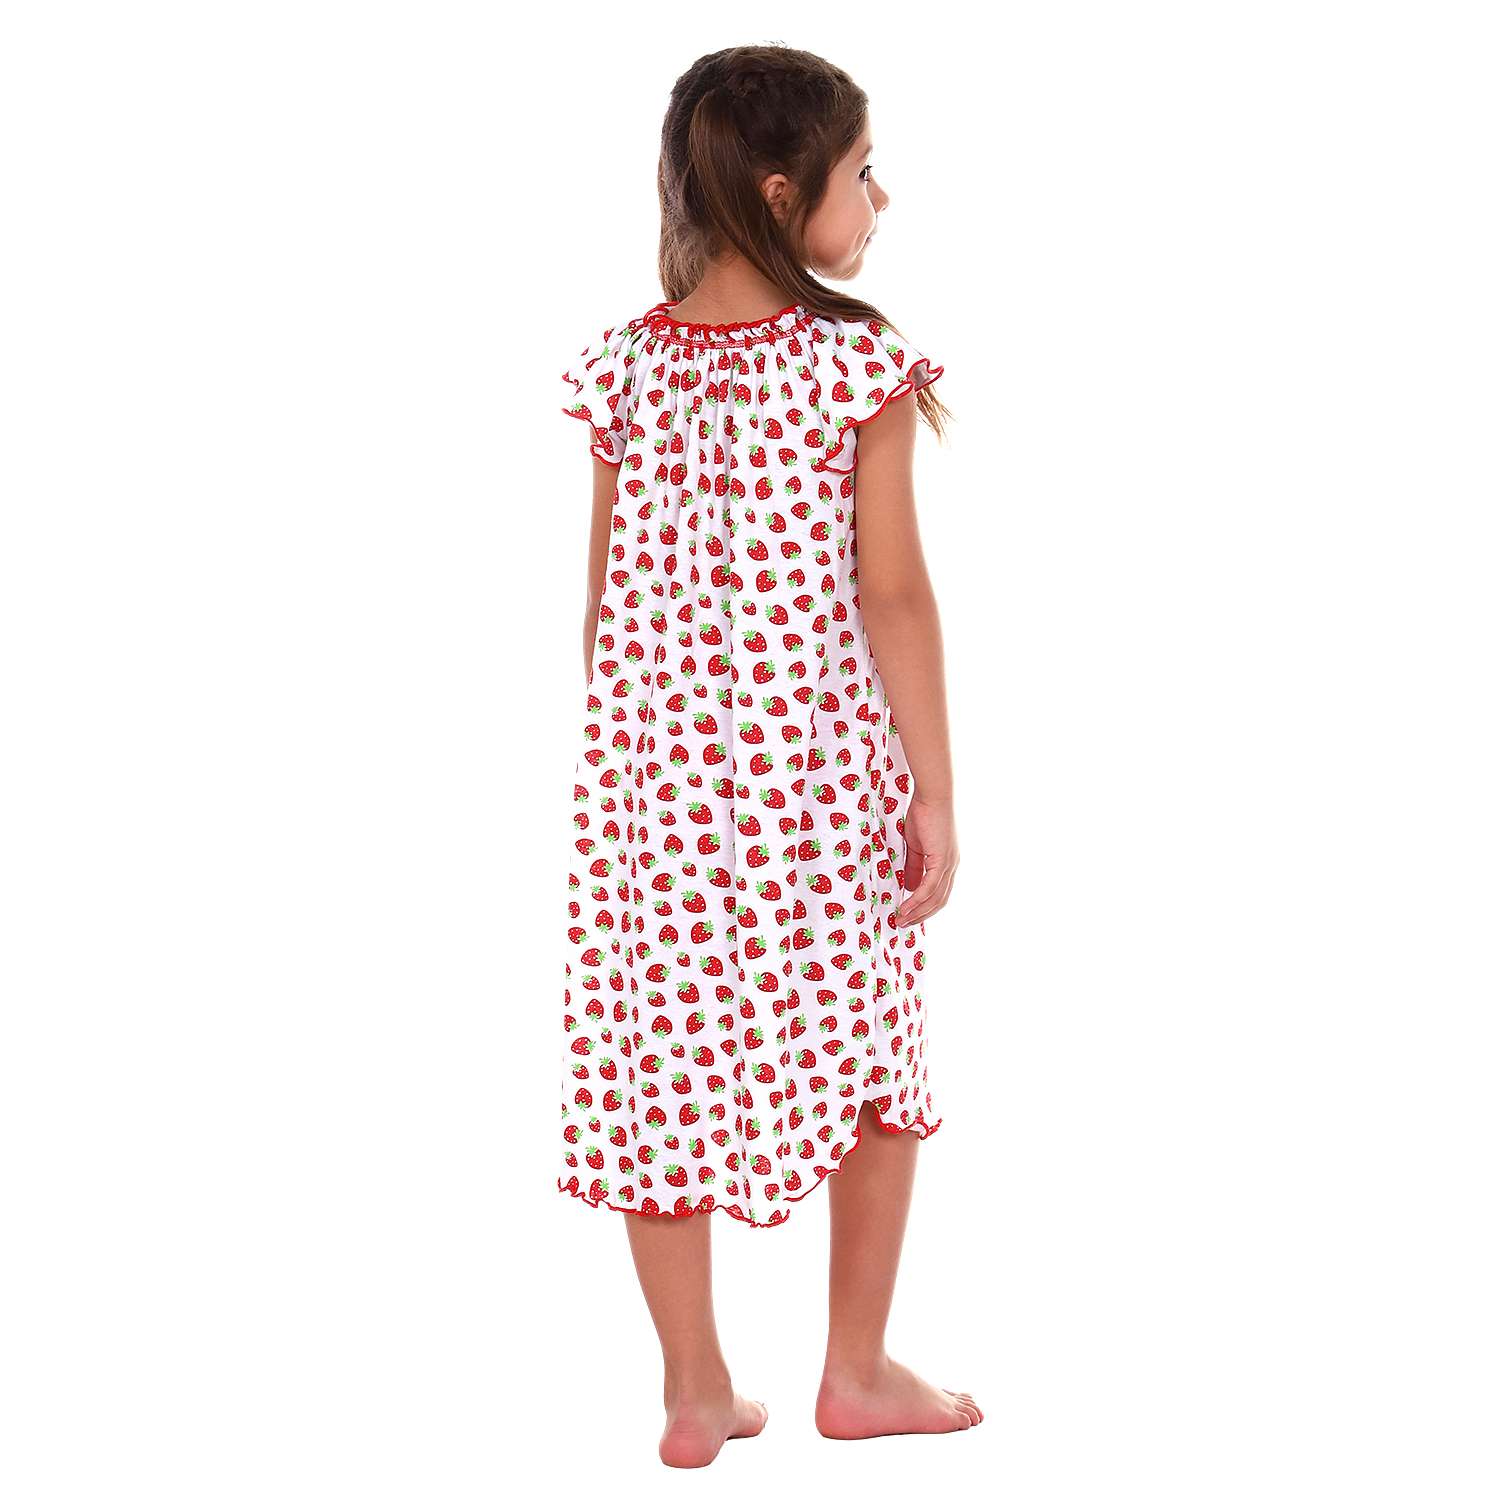 Сорочка ночная Детская Одежда 0003К/красный2 - фото 4